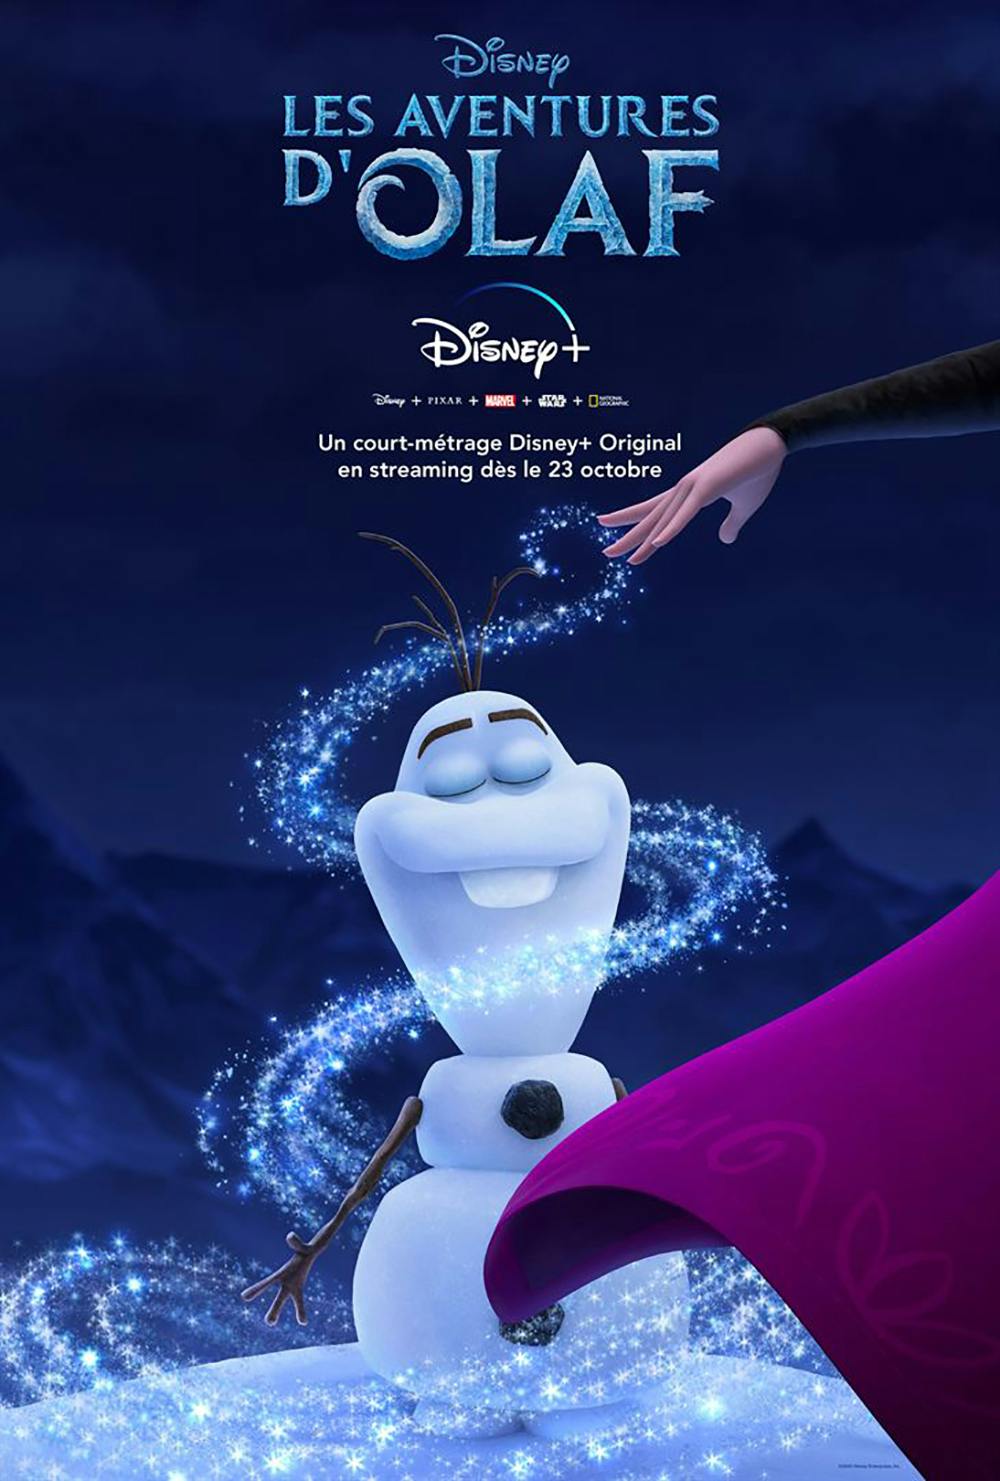 Olaf, le bonhomme de neige de la Reine des Neiges, affiche Les aventures d'Olaf sur Disney+